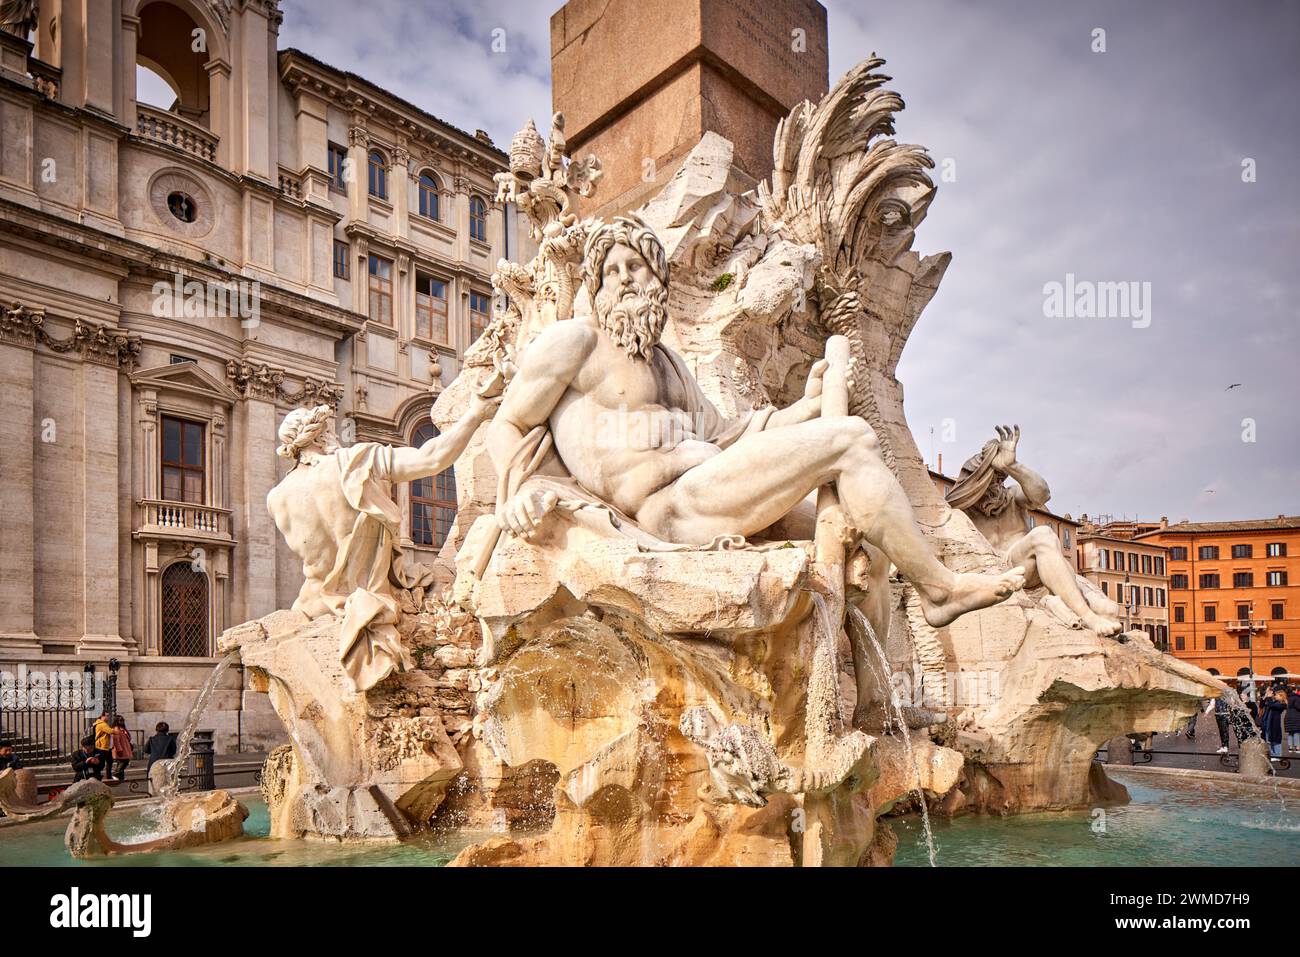 Sant'Agnese in Agone presso la fontana classica del XVII secolo, l'obelisco romano, Piazza Navona, Roma, Italia. Foto Stock